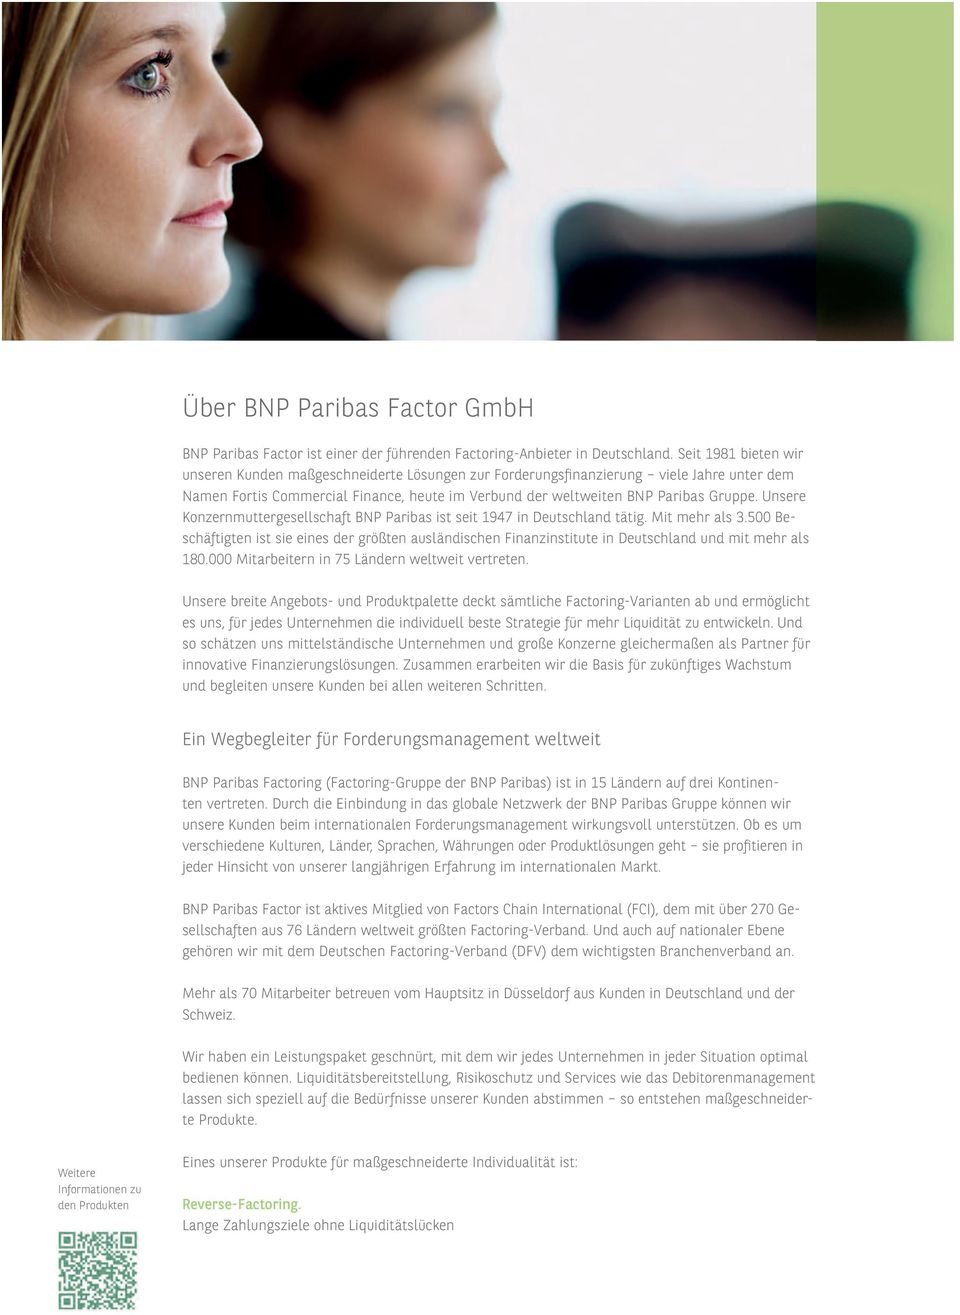 Unsere Konzernmuttergesellschaft BNP Paribas ist seit 1947 in Deutschland tätig. Mit mehr als 3.